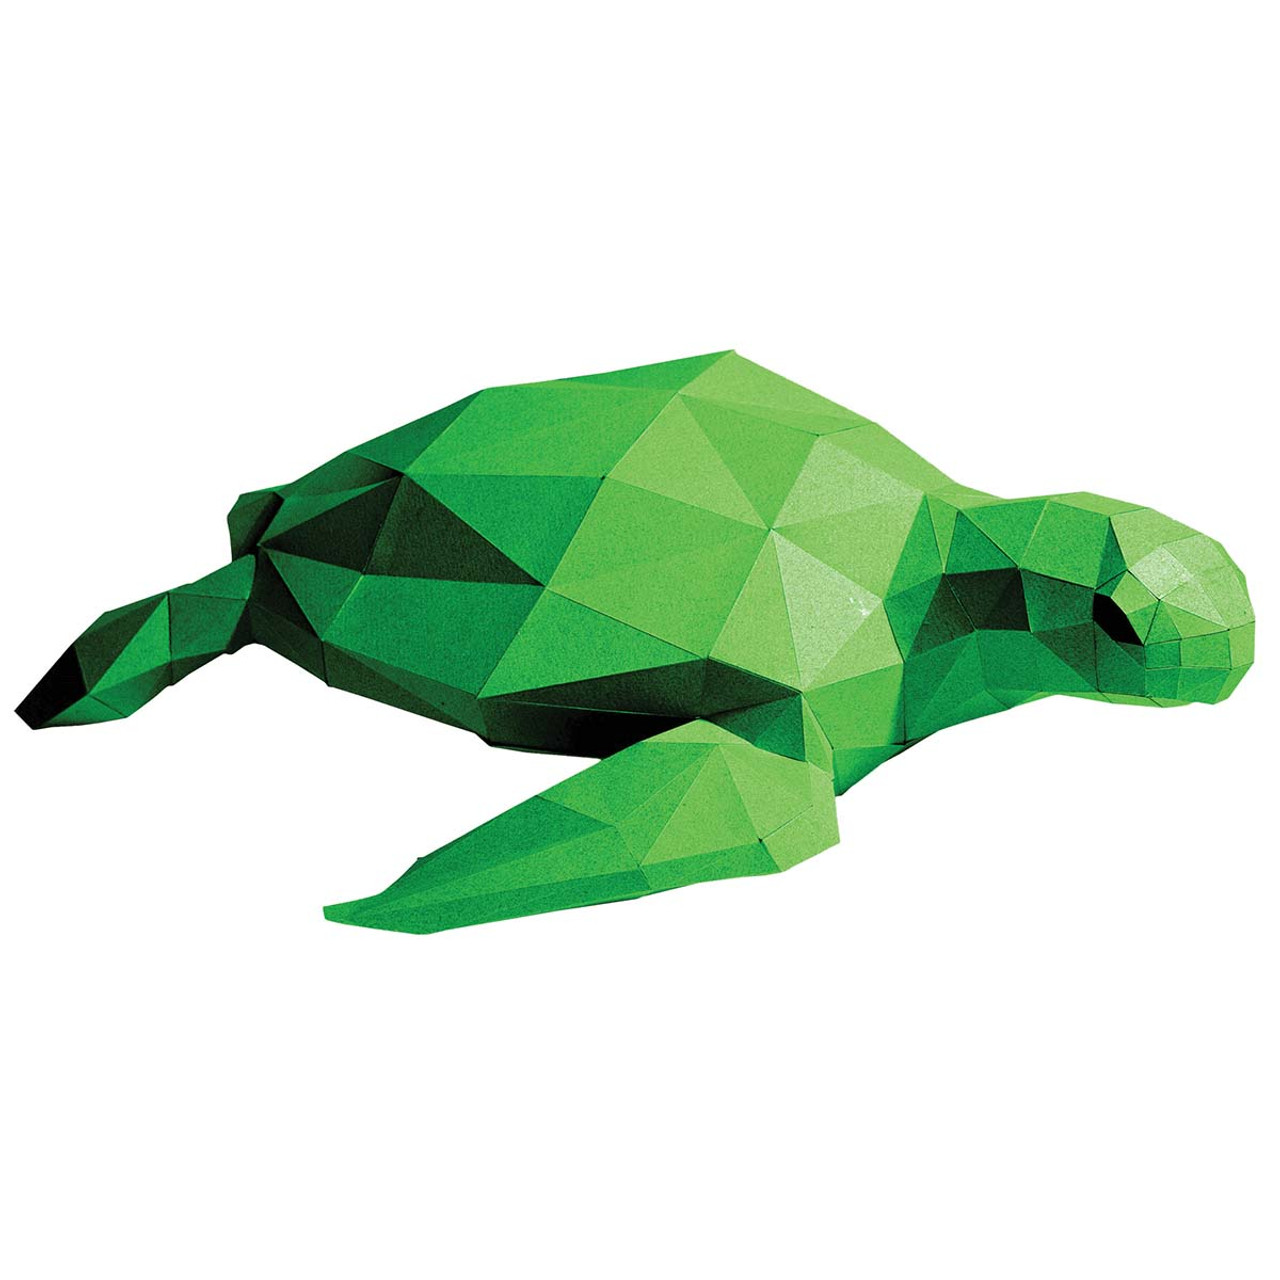 Herrschners Sea Turtles Set Plastic Canvas